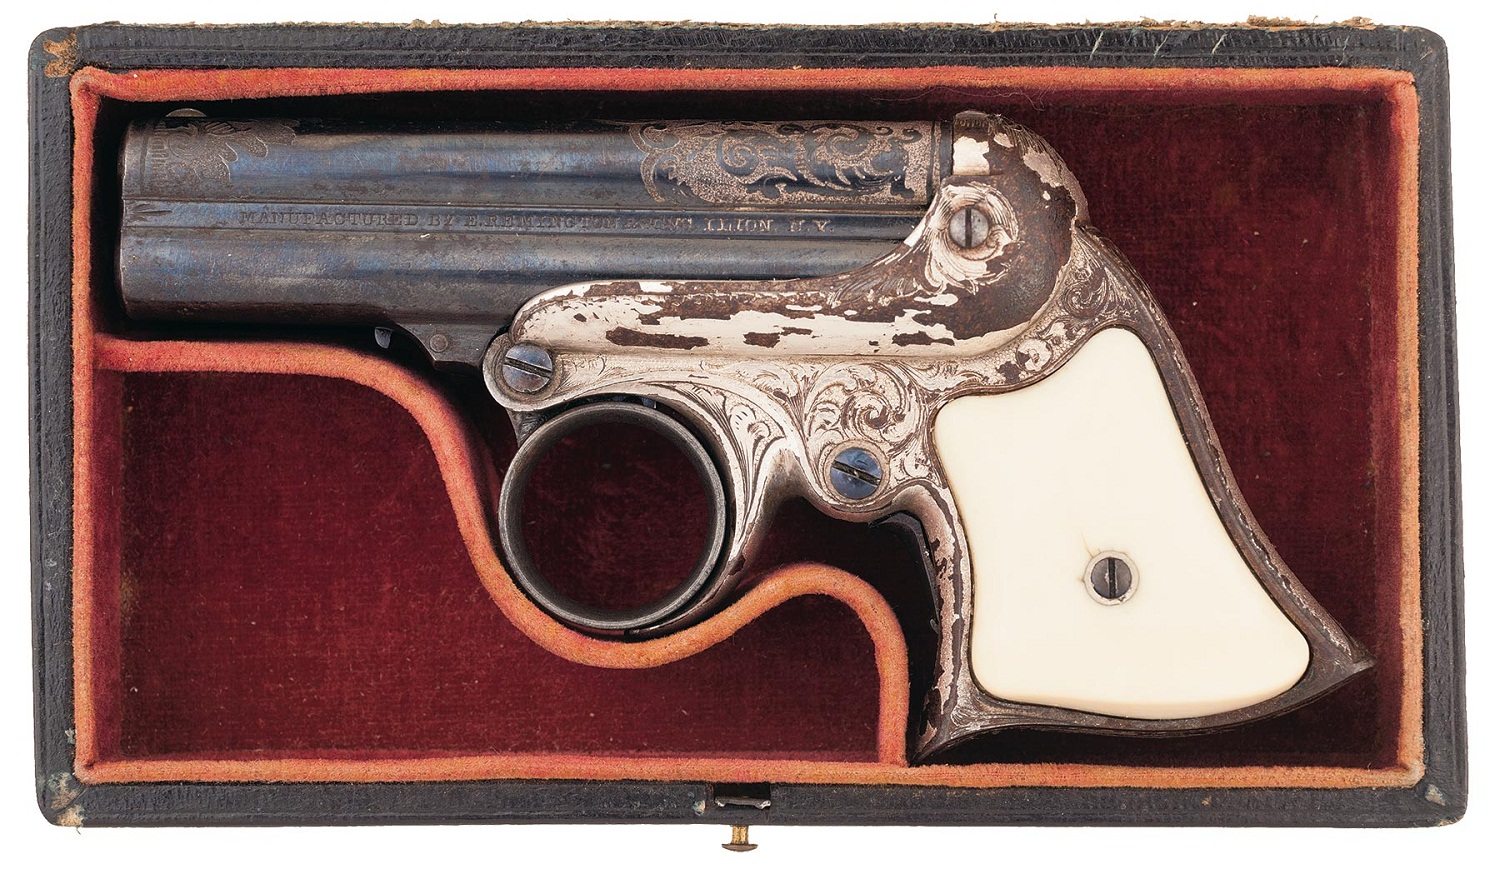 Remington-Elliot Derringer 32RF